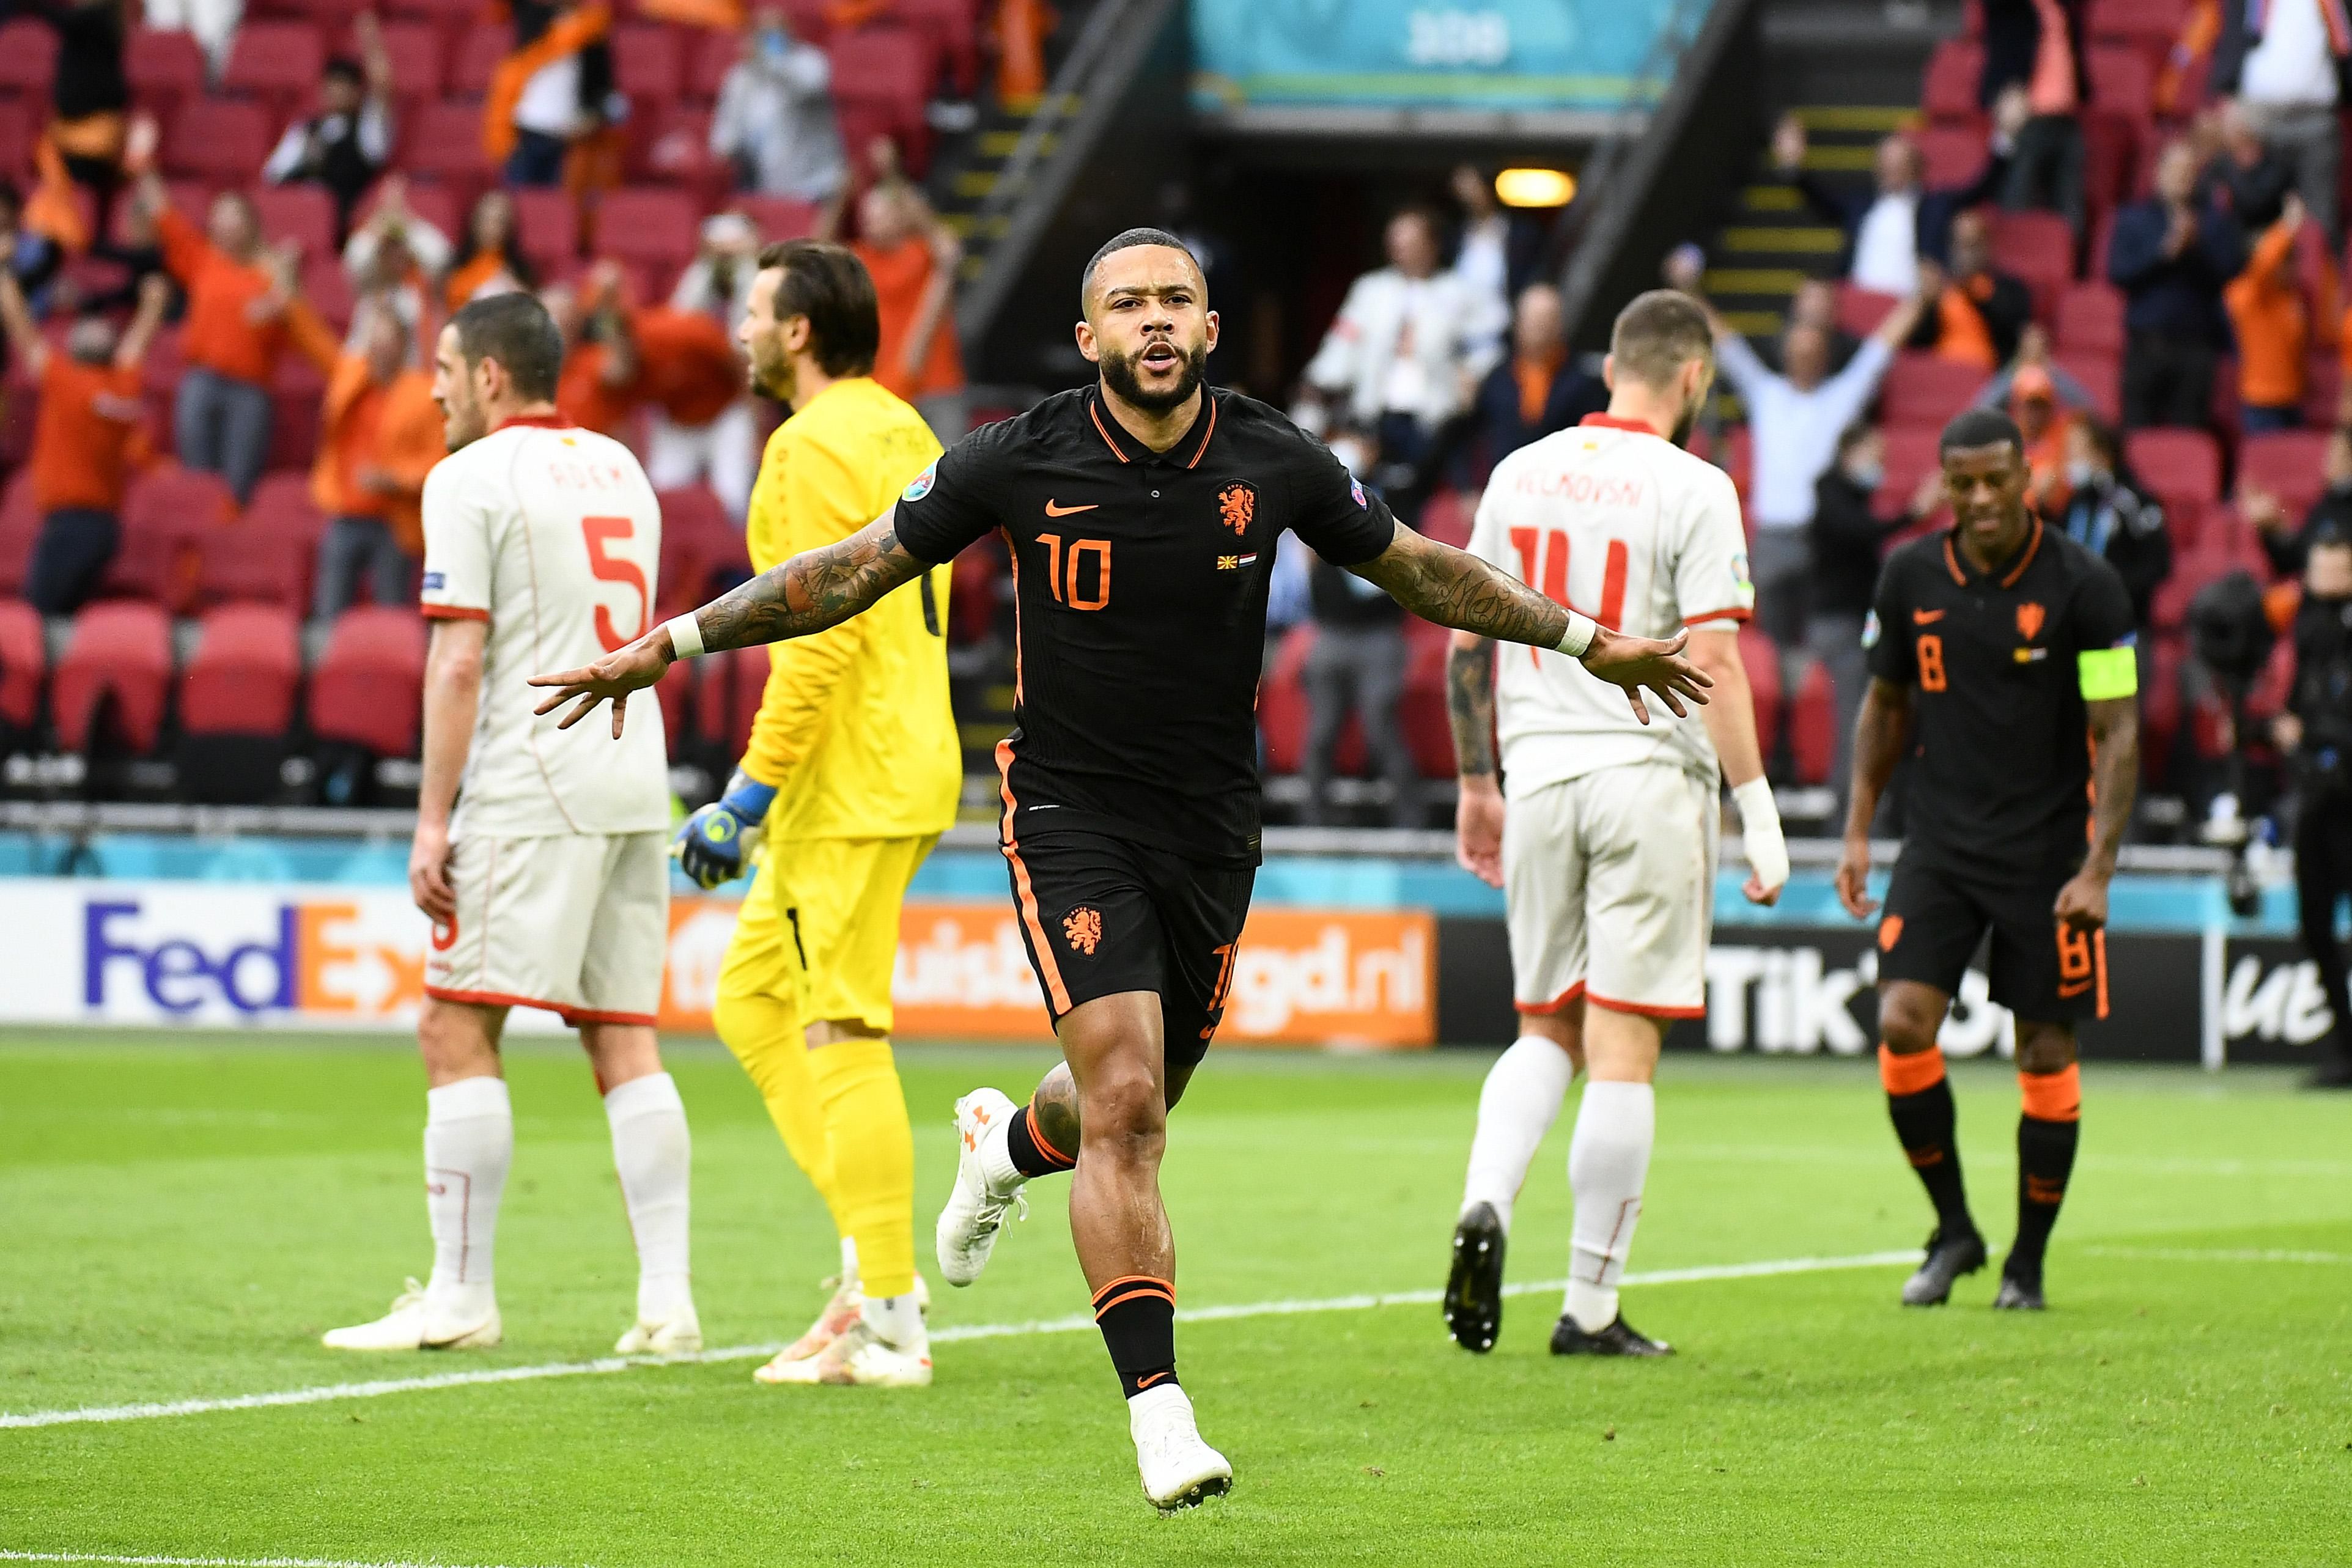 Північна Македонія – Нідерланди – результат, рахунок матчу Євро 2020 